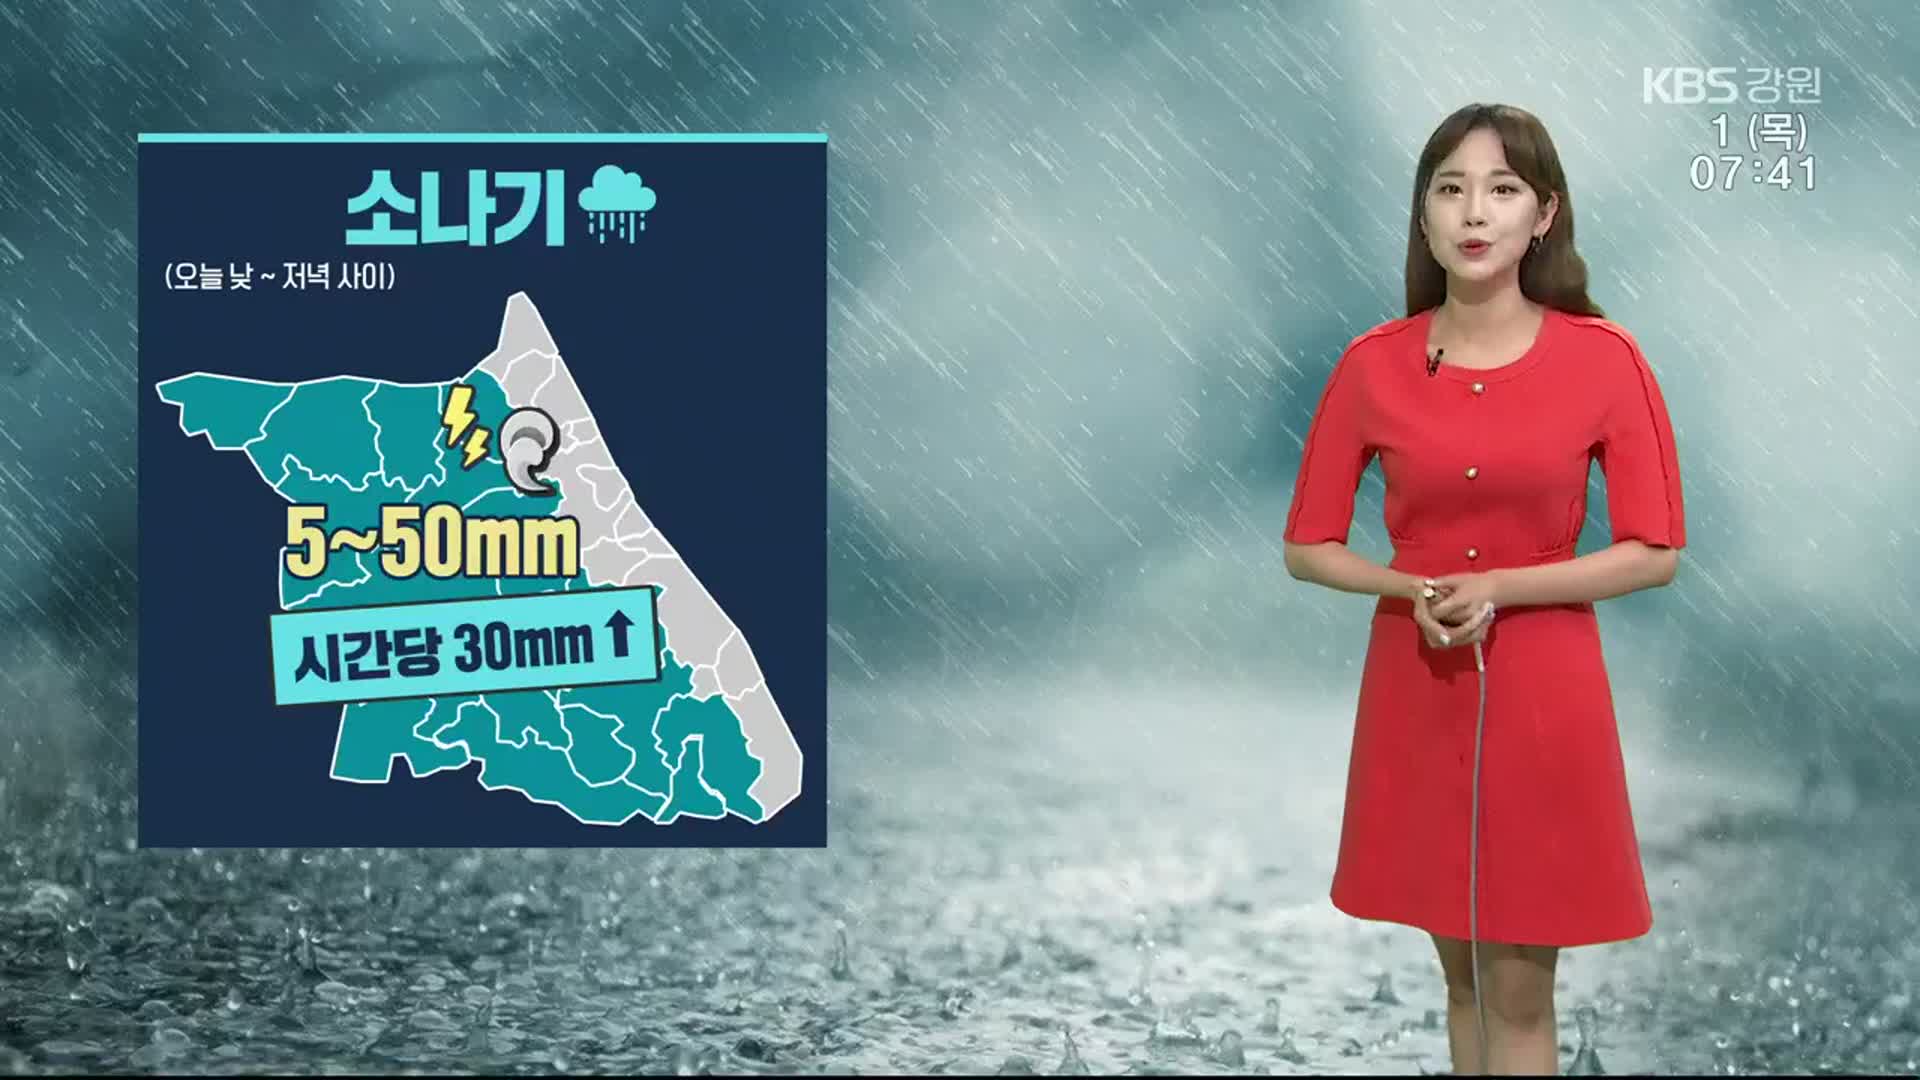 [날씨] 강원 오늘 5~50mm 소나기…시간당 30mm ↑